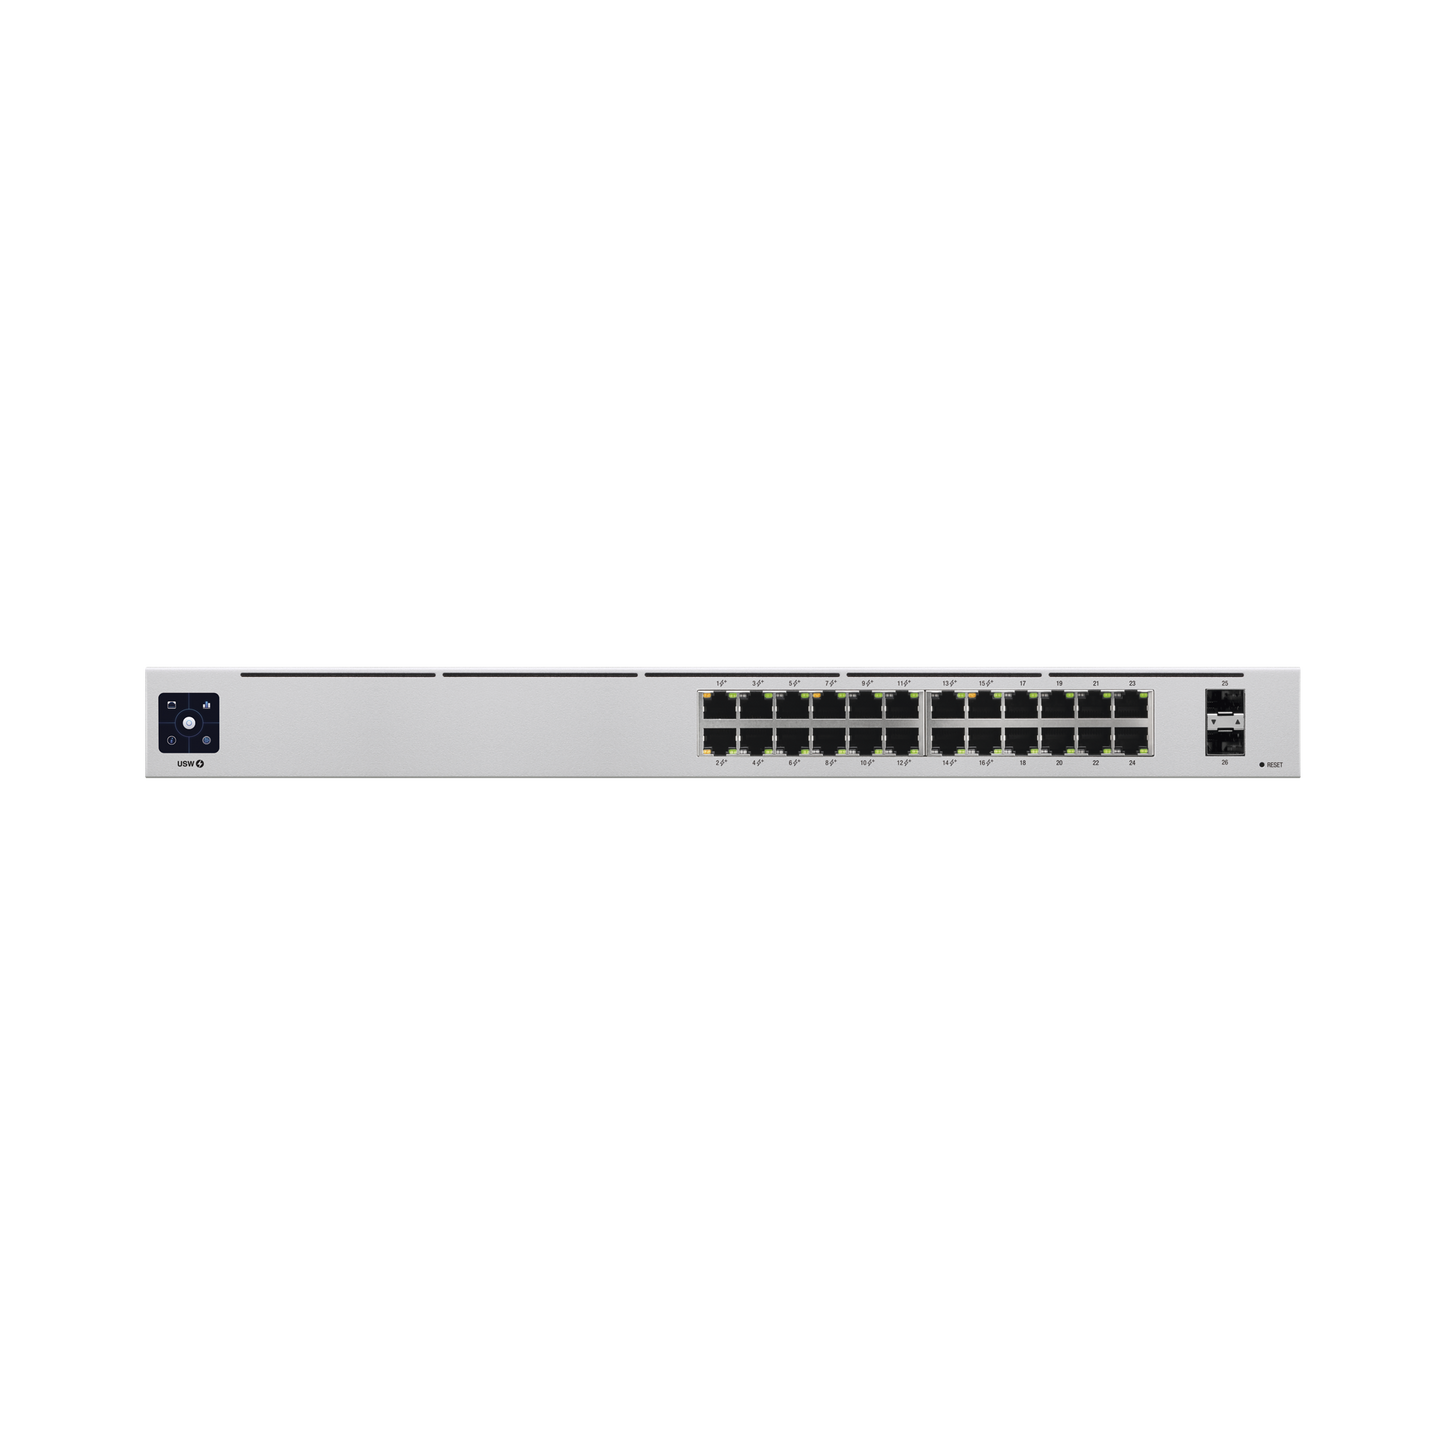 UniFi Switch USW-24-POE Gen2, Capa 2 de 24 puertos (16 puertos PoE 802.3af/at + 8 puertos Gigabit) + 2 puertos 1G SFP, 95W, pantalla informativa